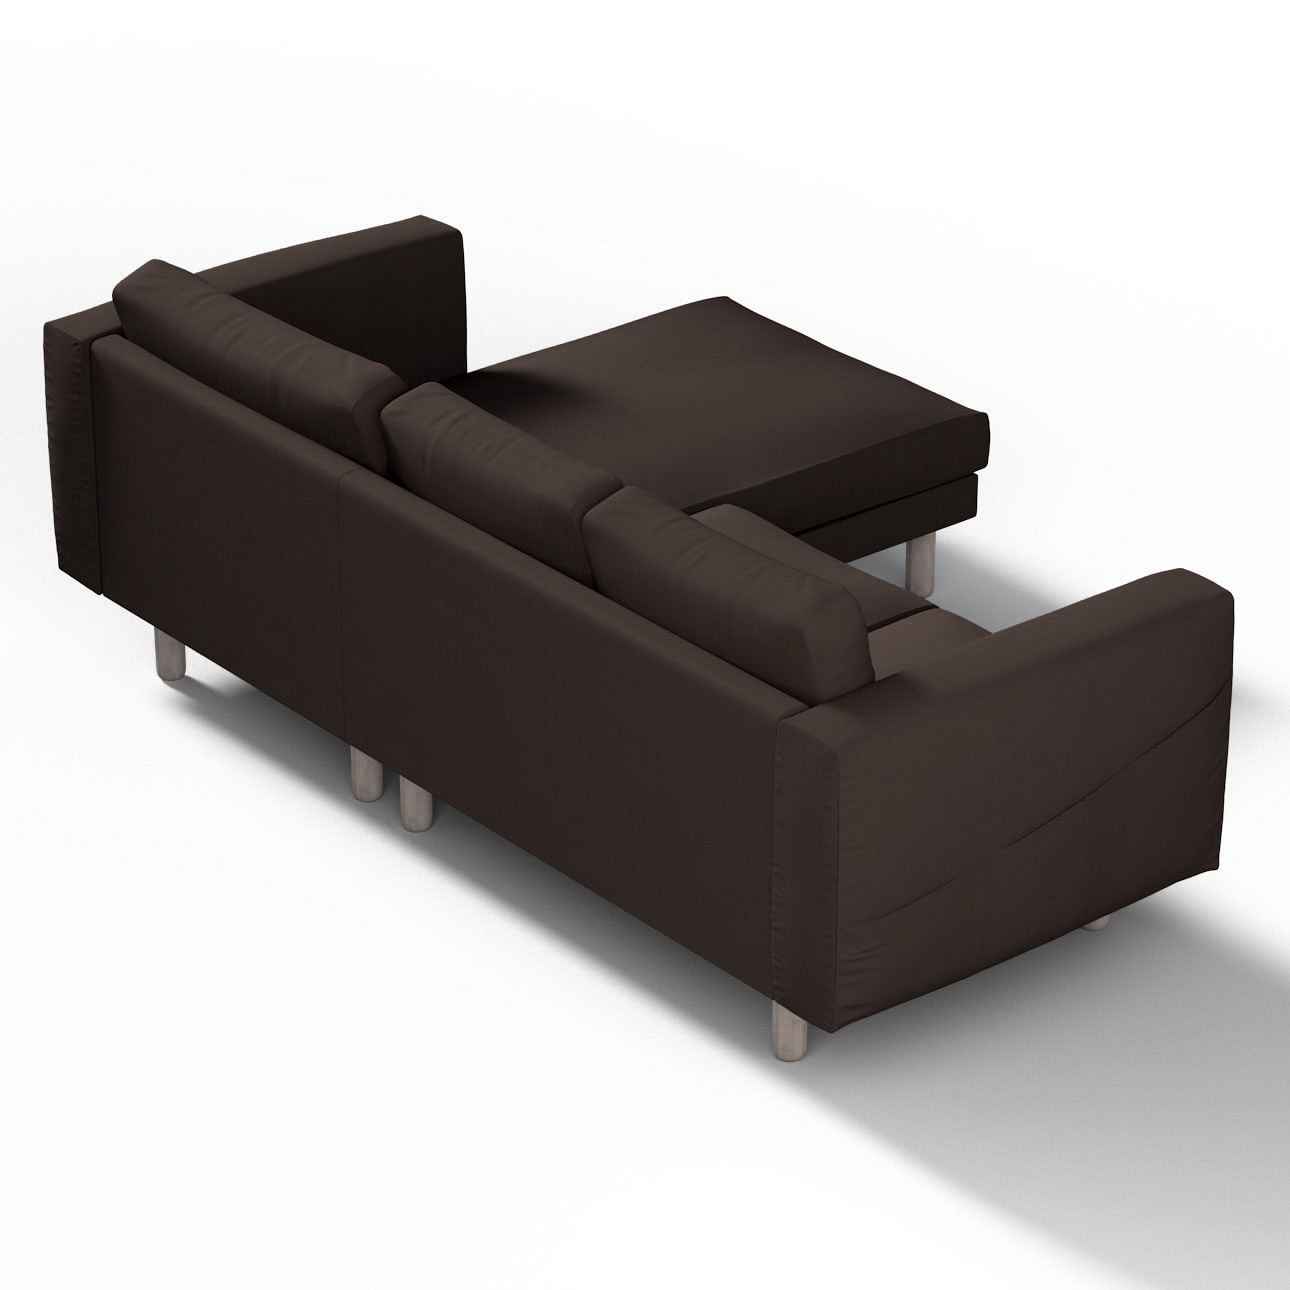 Bezug für Norsborg 3-Sitzer Sofa mit Recamiere, Kaffee, Norsborg Bezug für günstig online kaufen